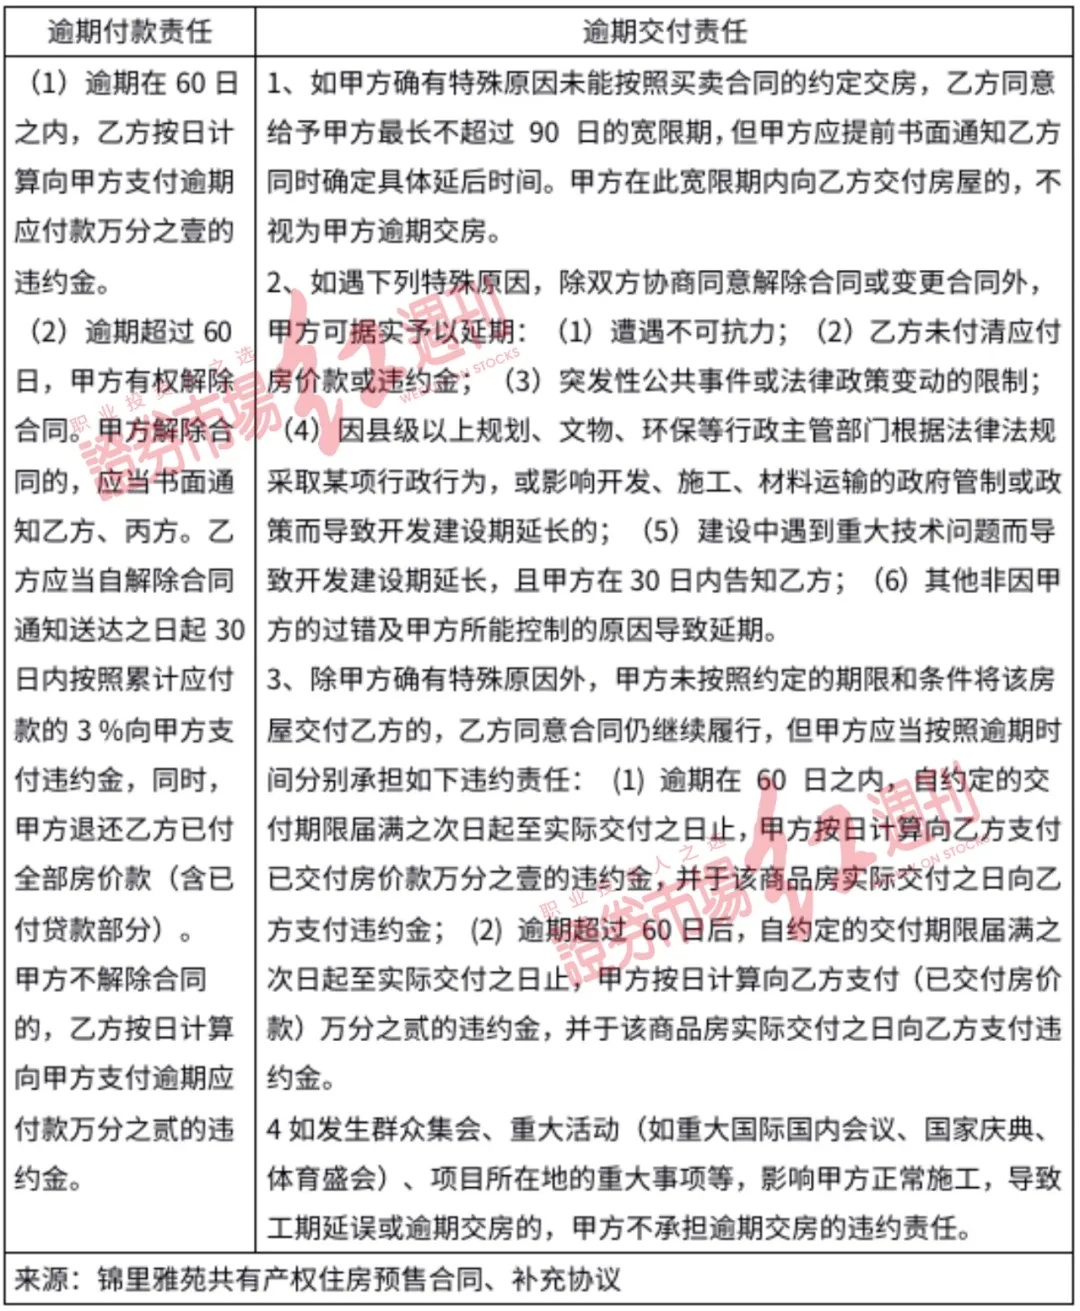 首开股份主战场北京优势地位减弱，多个共有产权项目被质疑有问题